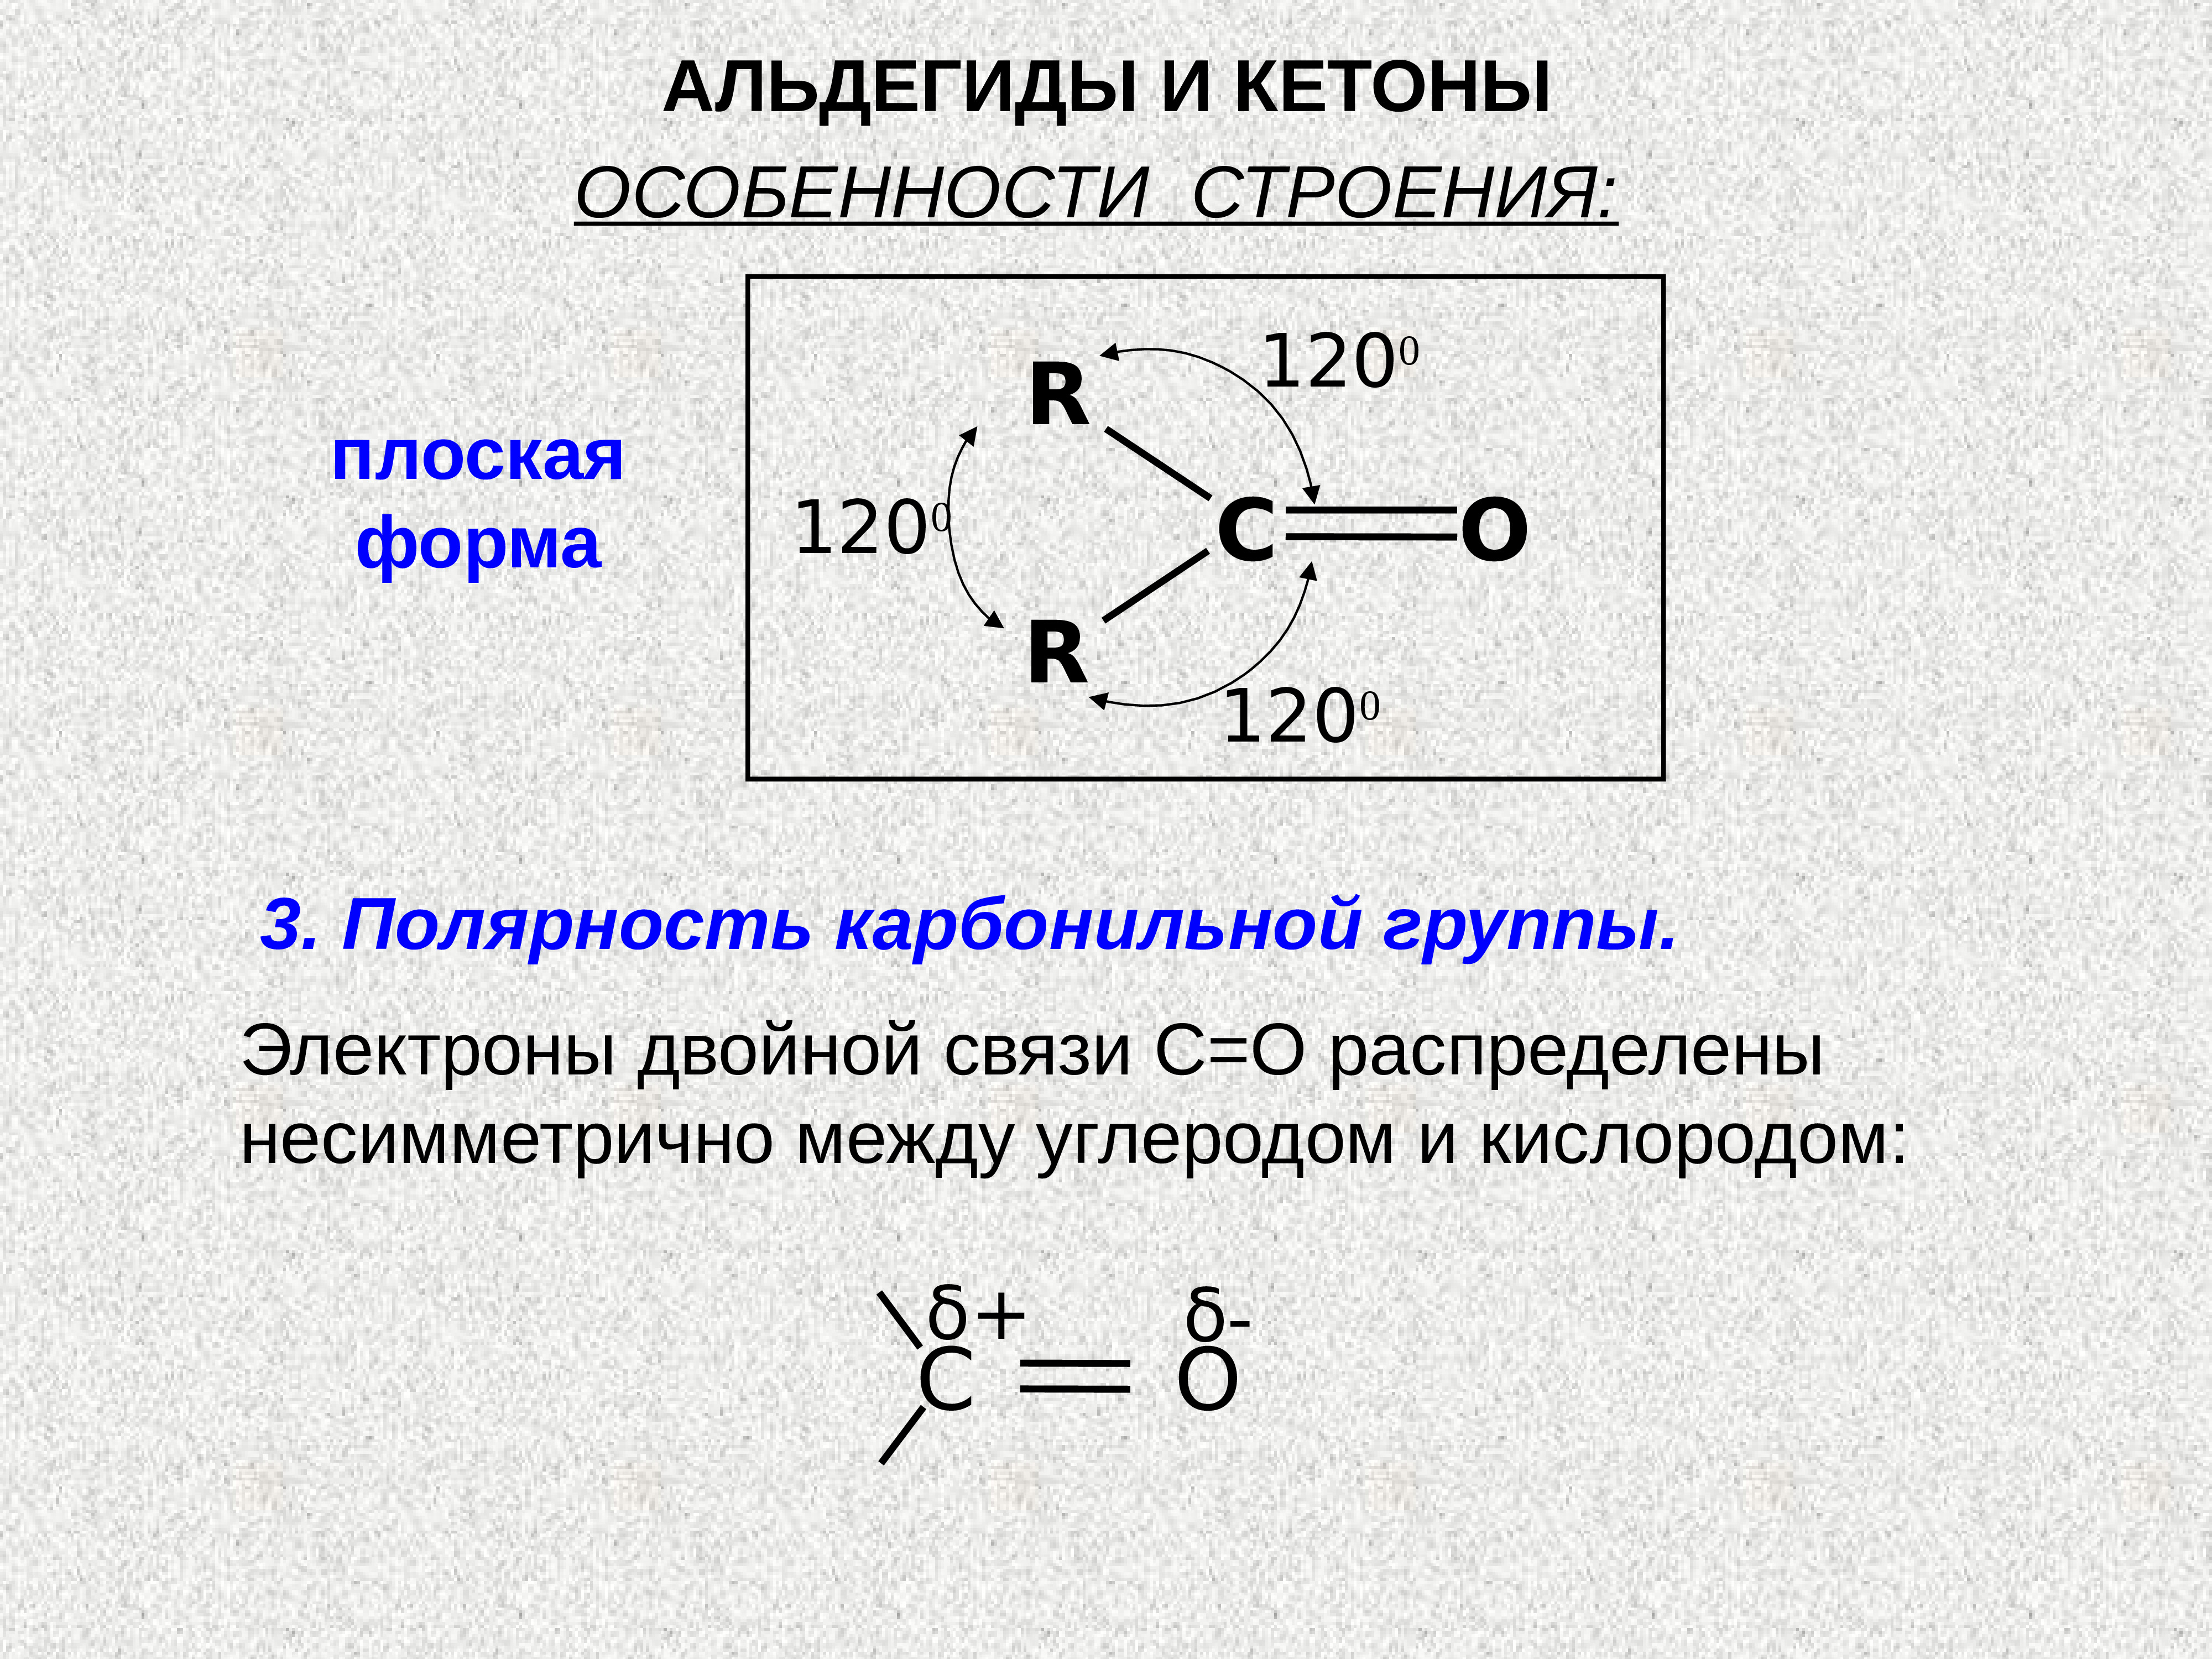 1 альдегидная группа. Электронное строение альдегидов. Строение карбонильной группы. Строение альдегидов. Особенности строения альдегидов.